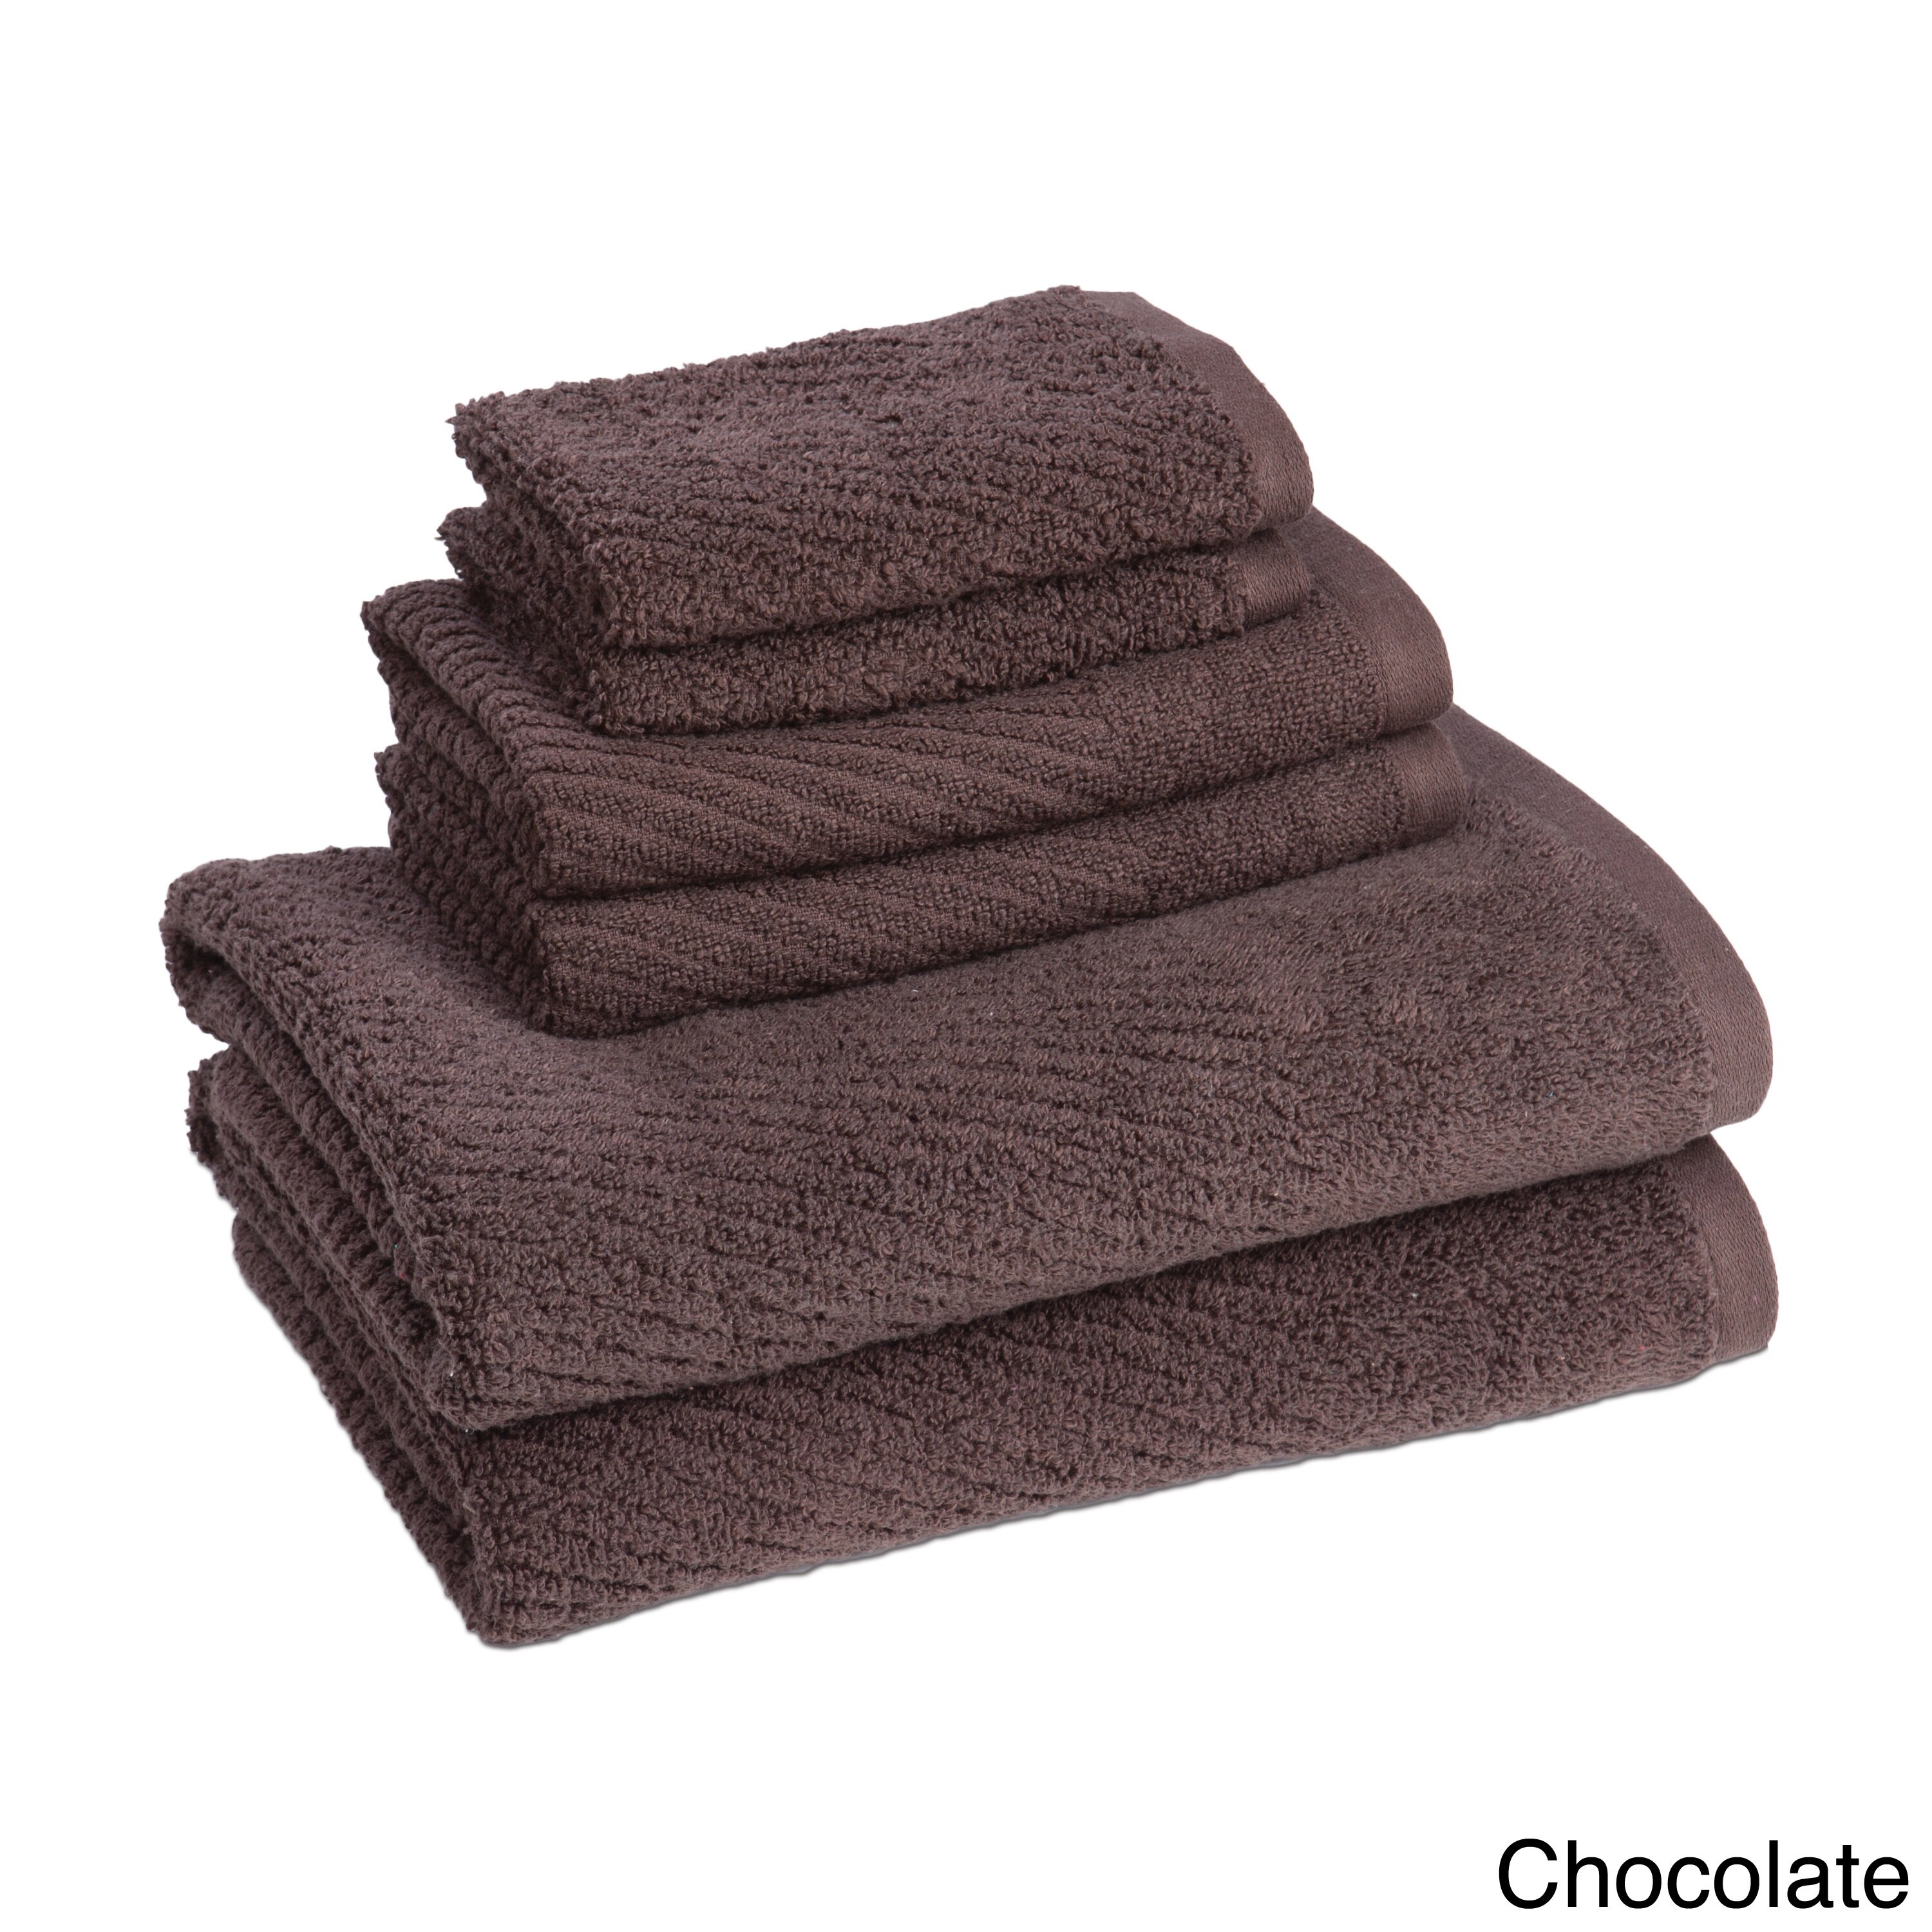 https://ak1.ostkcdn.com/images/products/11934367/Quick-Dry-Solid-Color-6-piece-Cotton-Towel-Set-c0d4aaca-0373-4d51-97b4-ce9abd80b41d.jpg